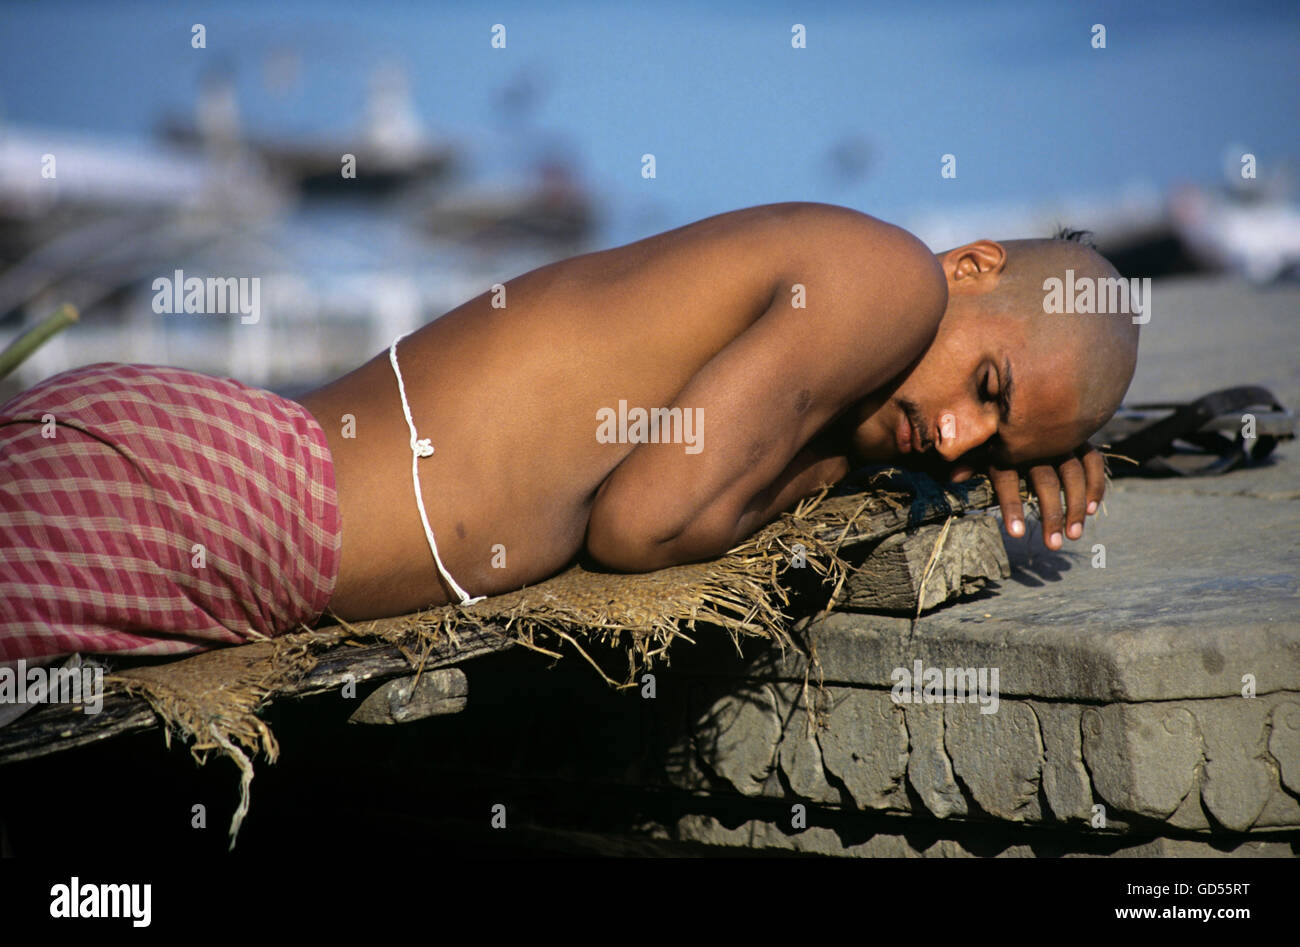 Male pilgrim asleep in the sun Stock Photo